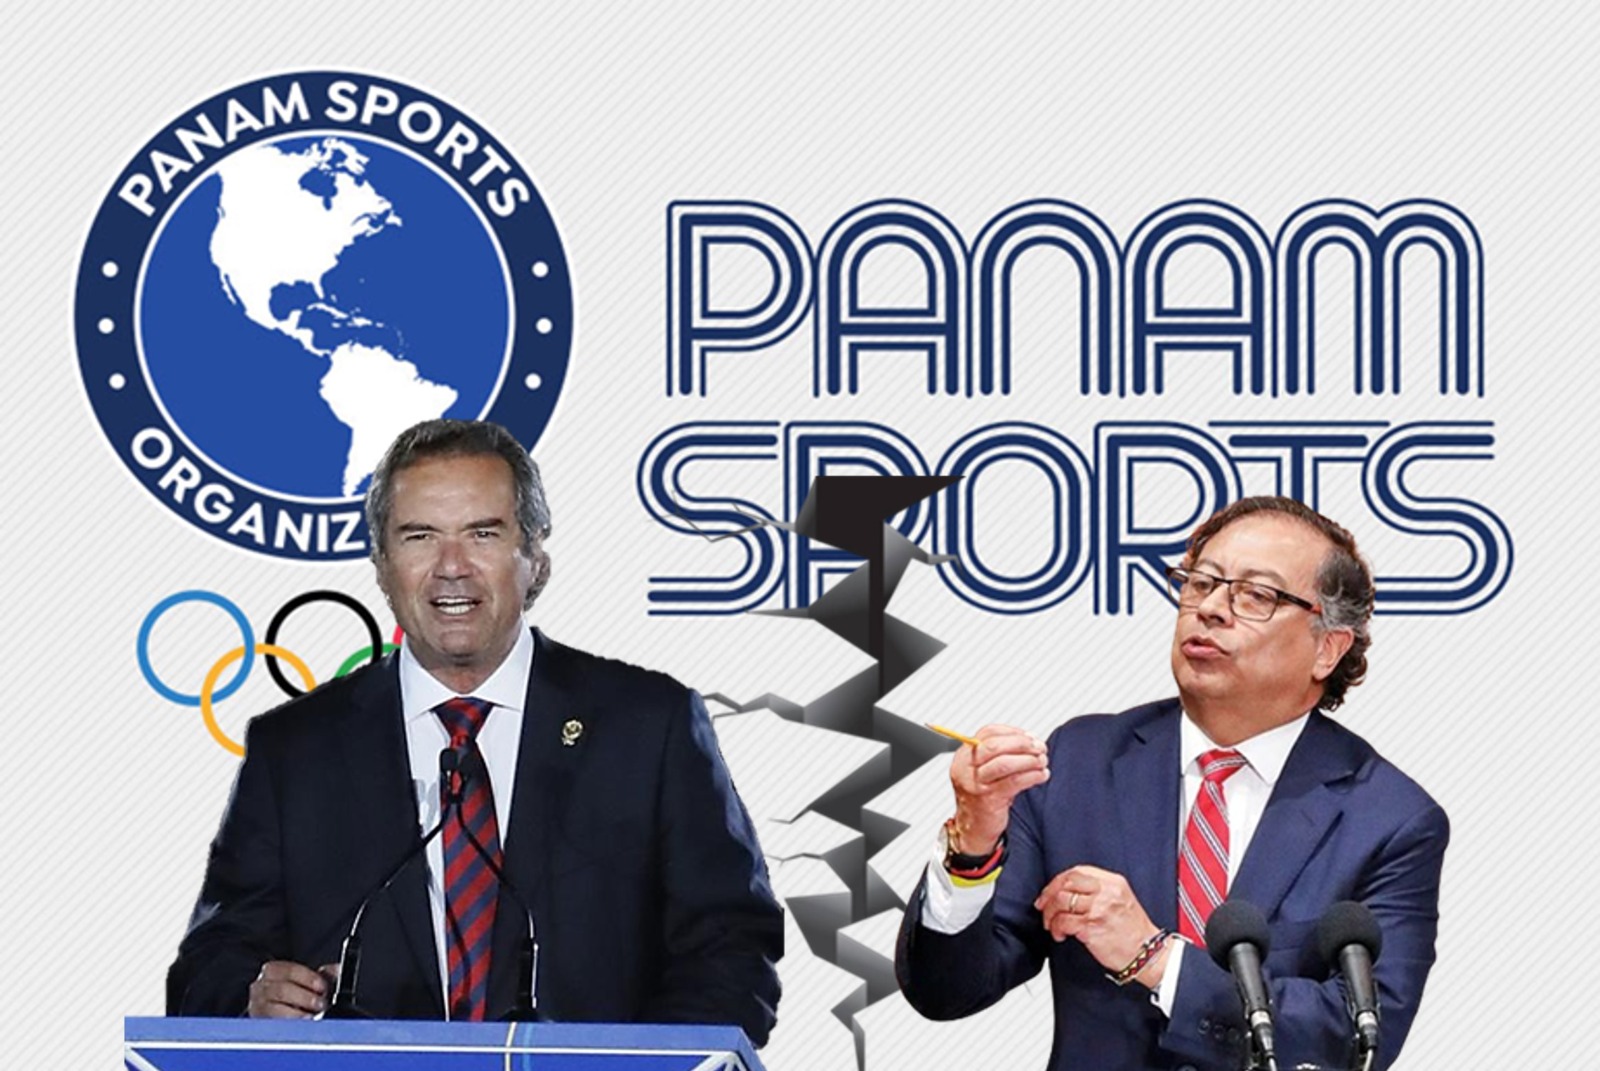 Nos ‘fregamos’ Petro no giro la plata para los Juegos Panamericanos y el plazo se venció hoy